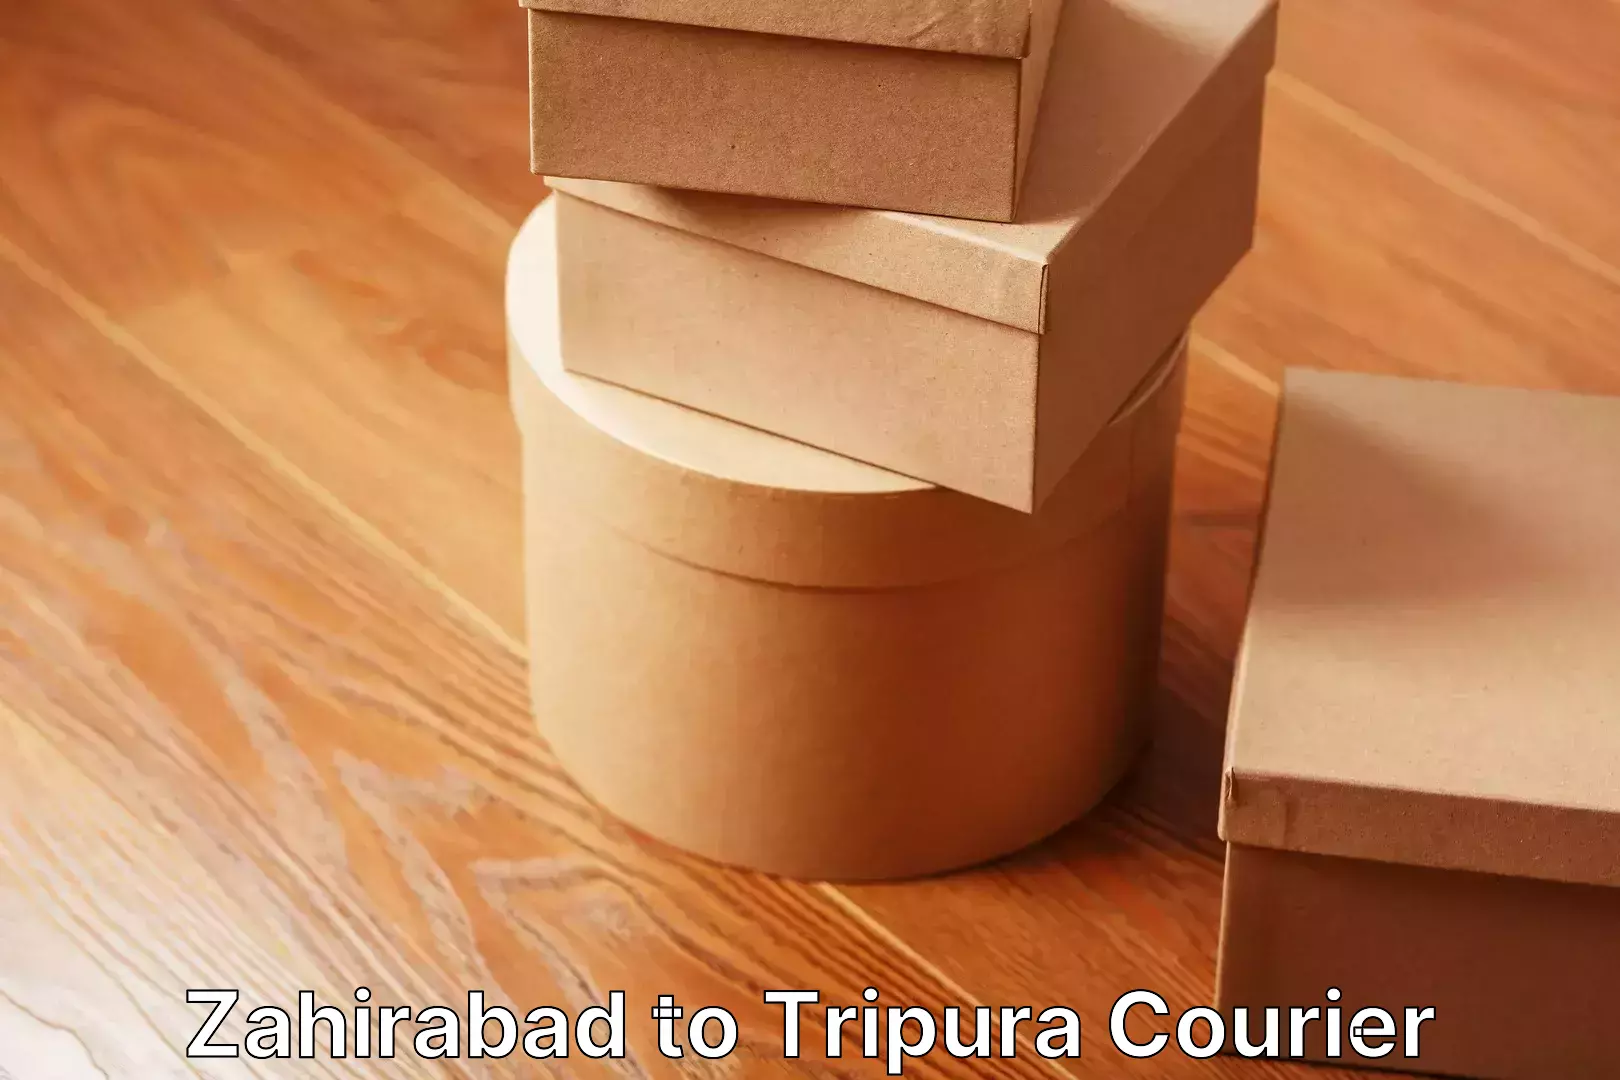 Efficient moving company Zahirabad to Tripura